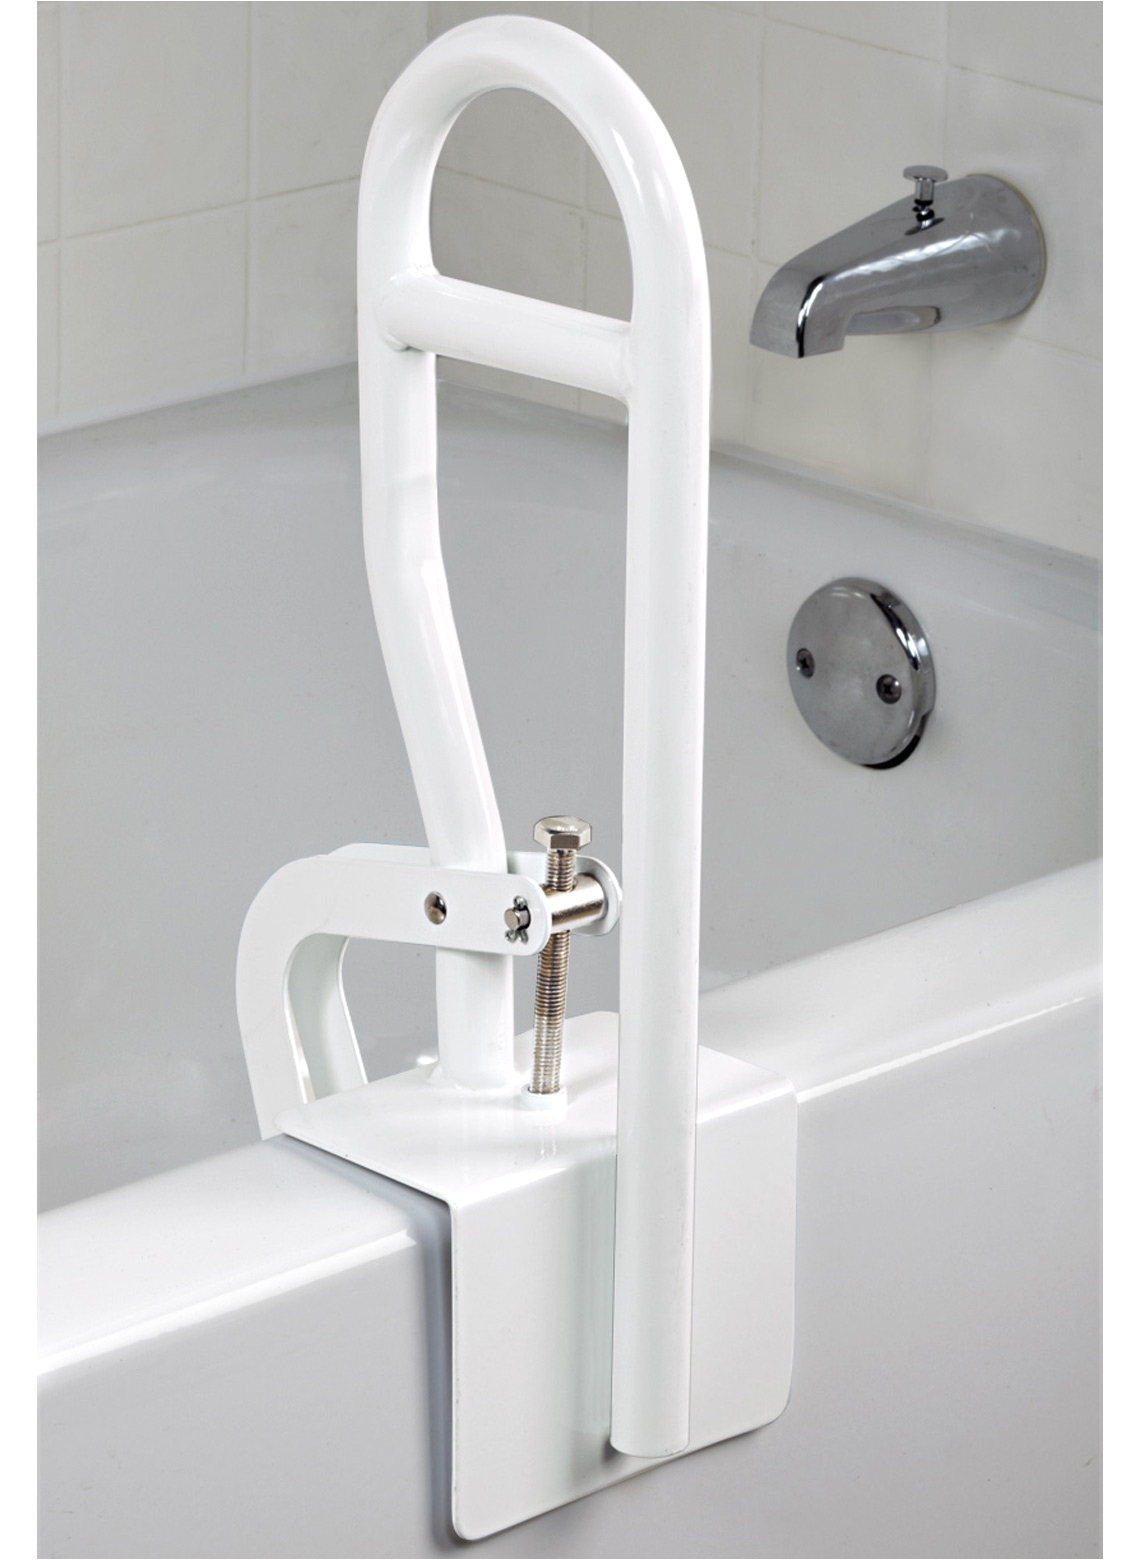 Handicap Bathtub Rails Bathroom Awesome Bathroom Safety Bars for Elderly Adults